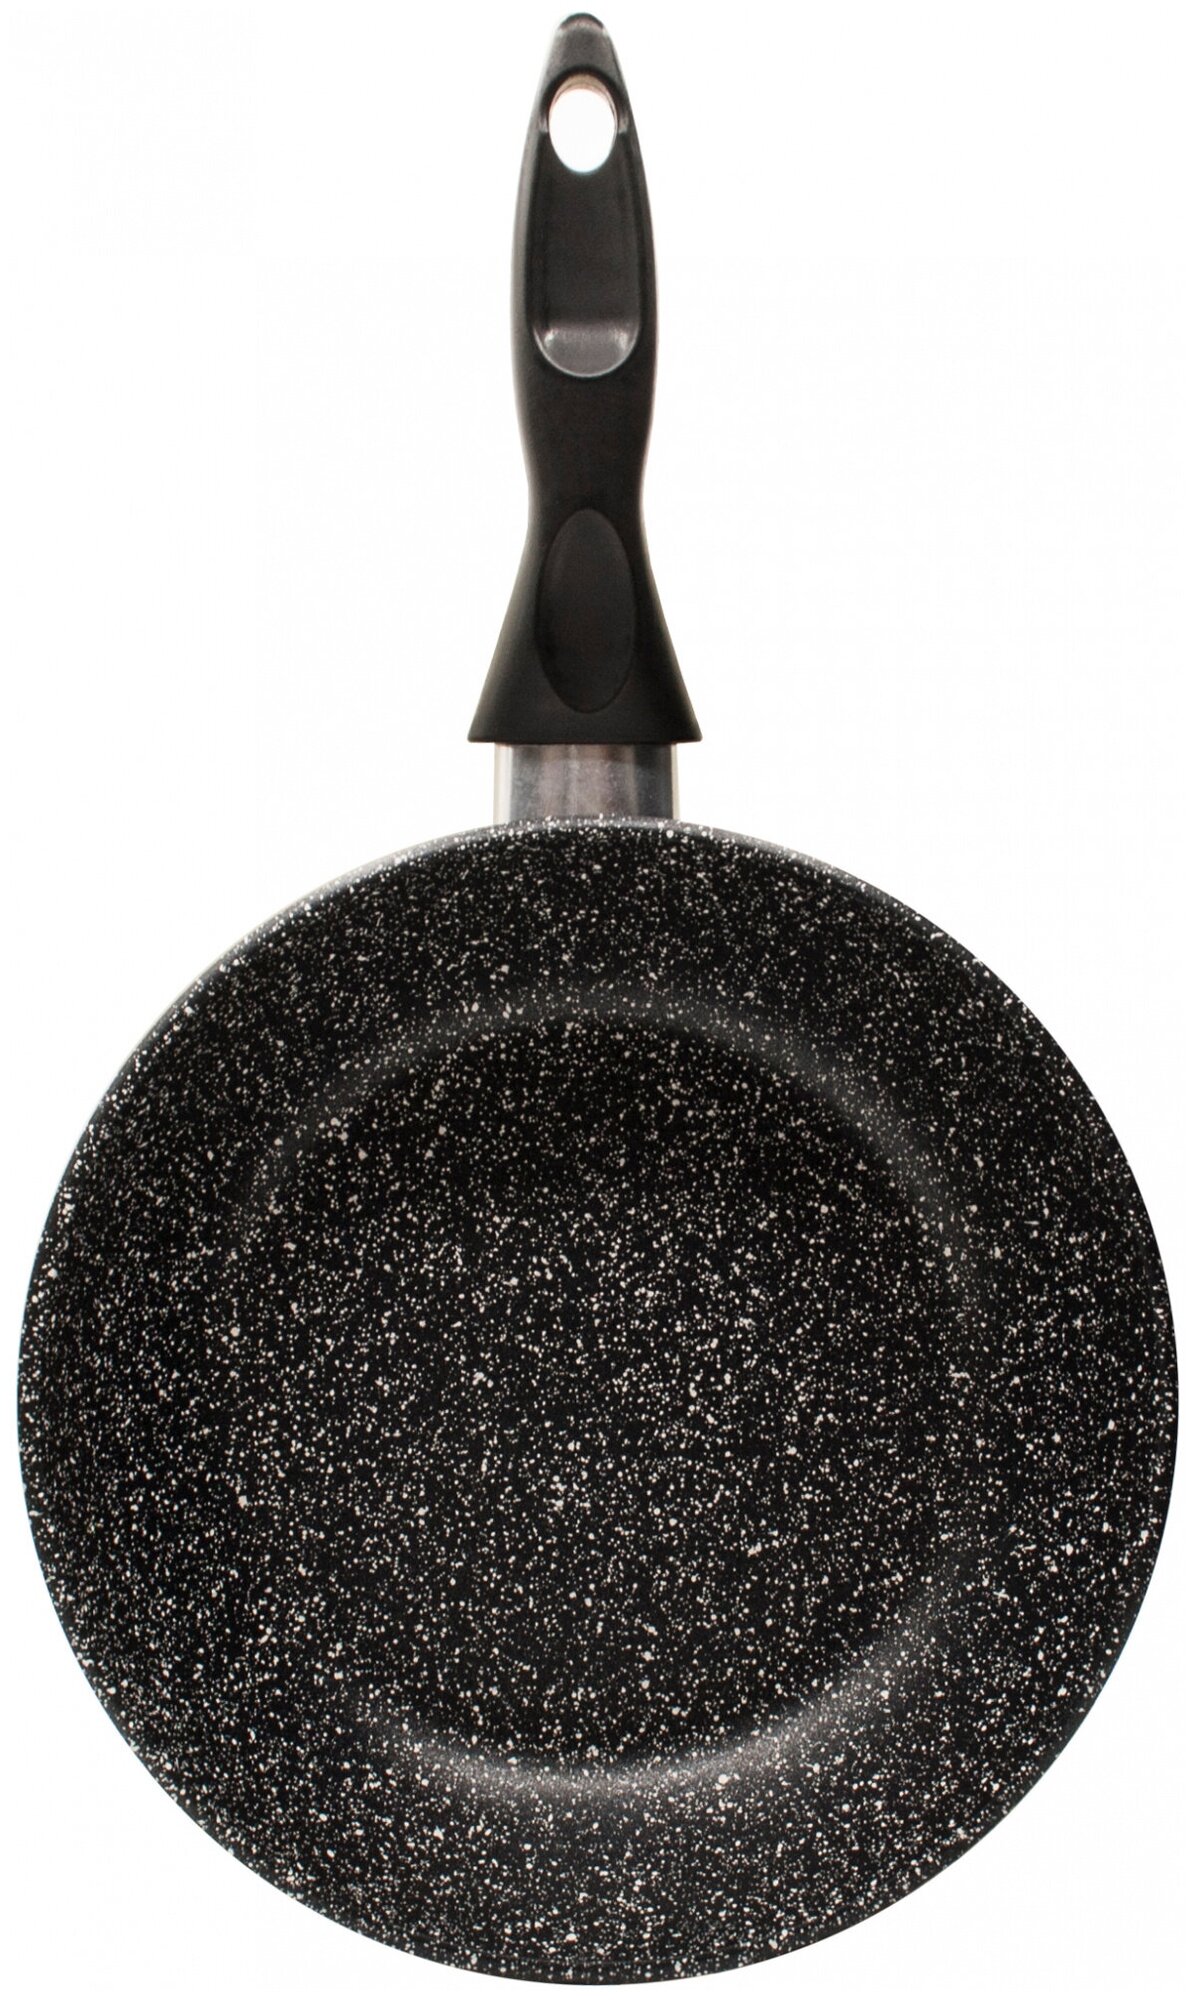 Сковорода Starwind Chef SW-CH3022 круглая 22см покрытие: Quantum2 ручка несъемная (без крышки) черный